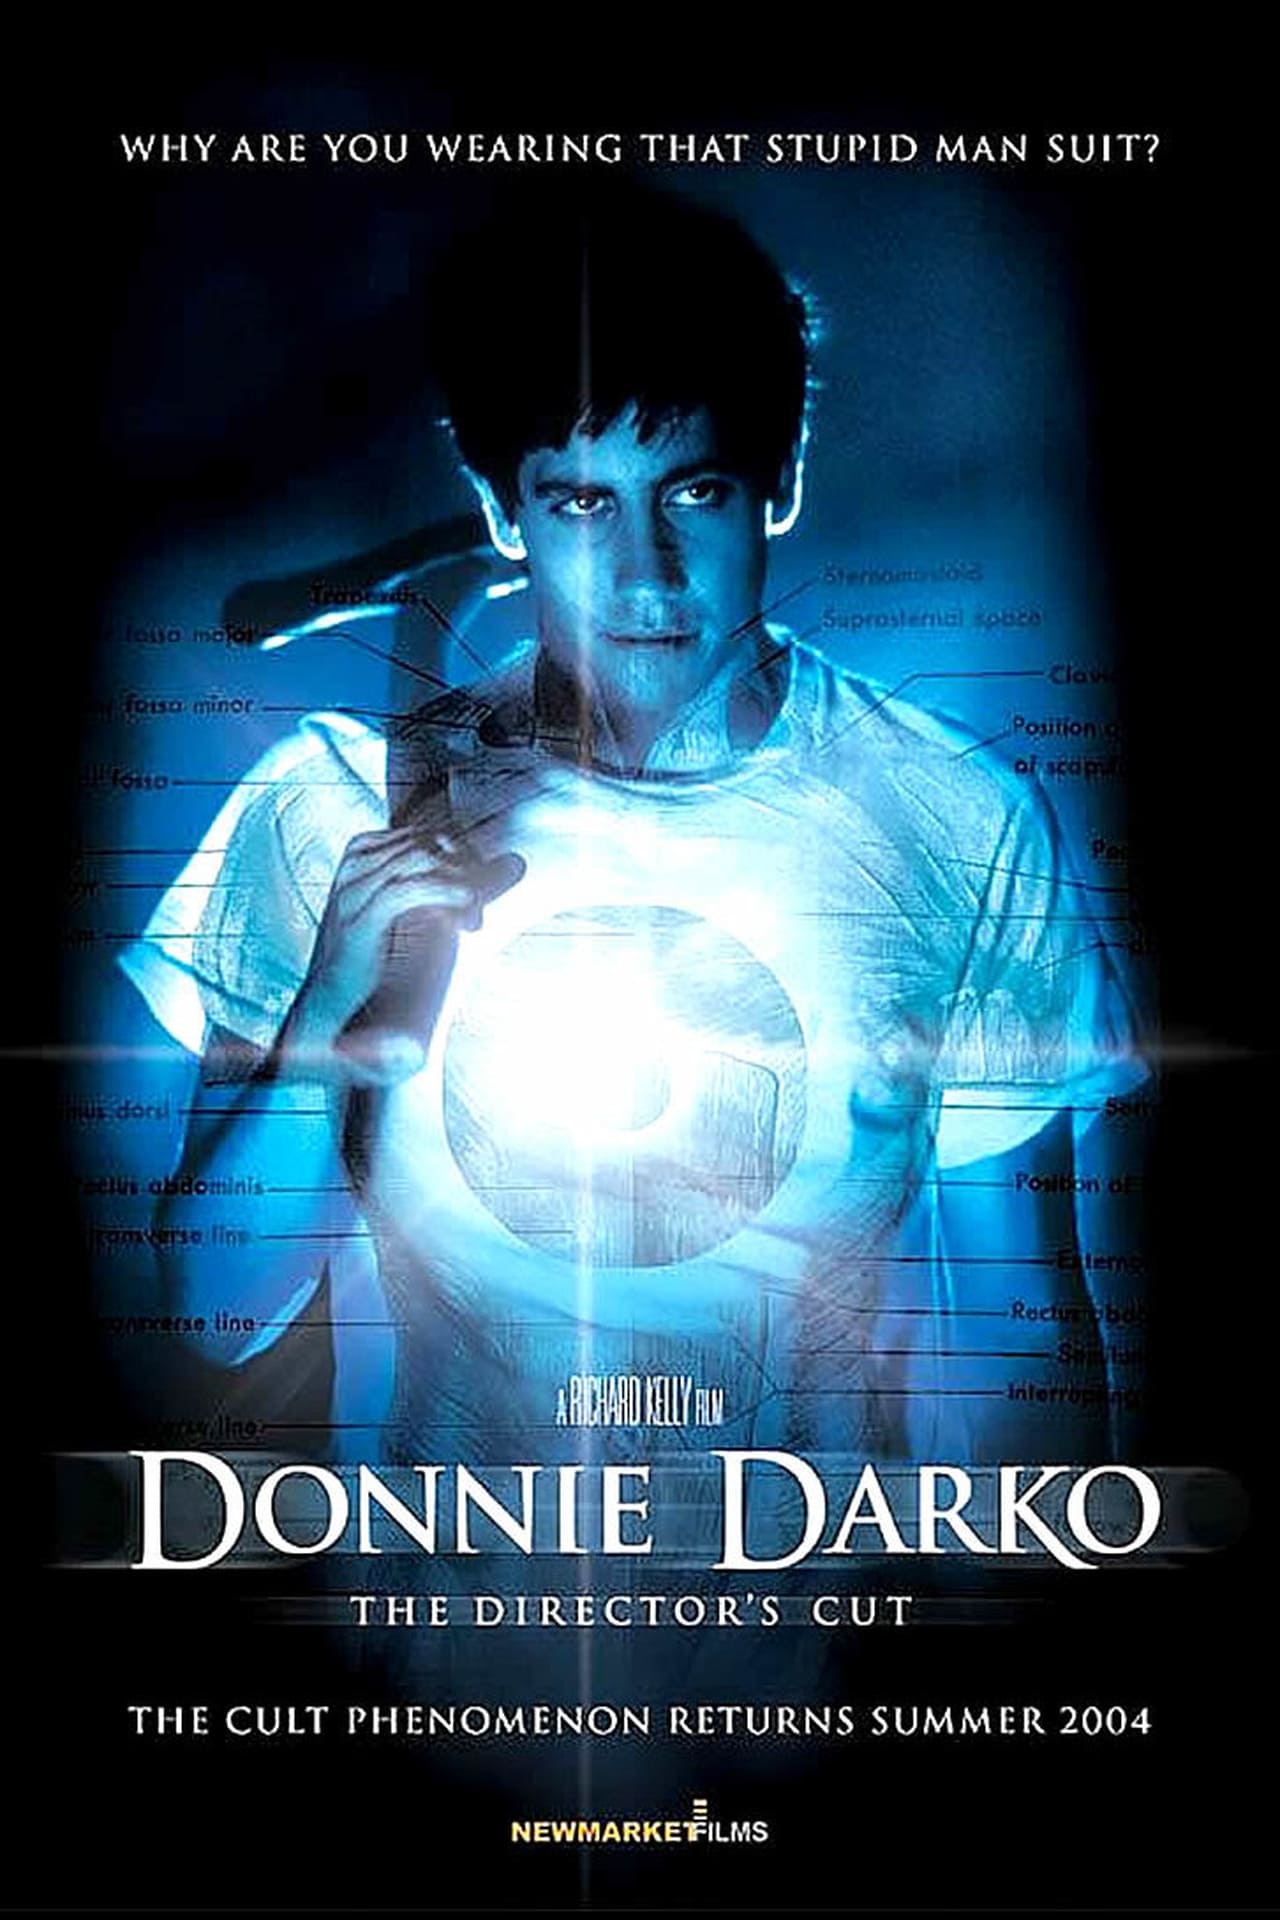 Donnie Darko (2001) Director's Cut 448Kbps 23.976Fps 48Khz 5.1Ch BluRay Turkish Audio TAC